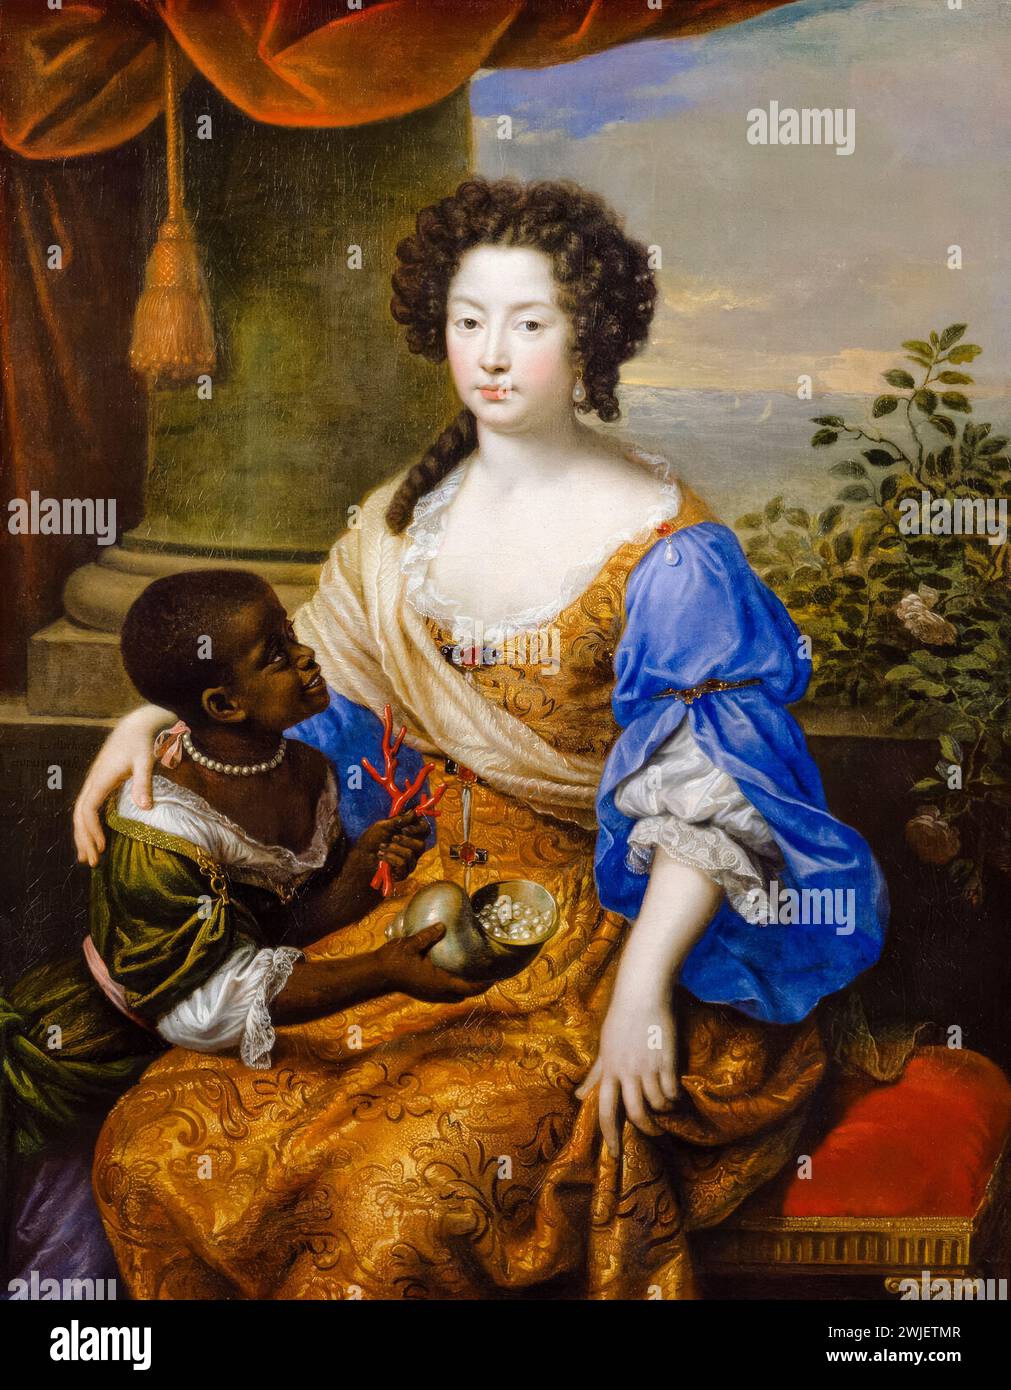 Louise de Kéroualle, duchesse de Portsmouth (1649-1734), maîtresse du roi Charles II d'Angleterre avec une servante, portrait peint à l'huile sur toile par Pierre Mignard, 1682 Banque D'Images